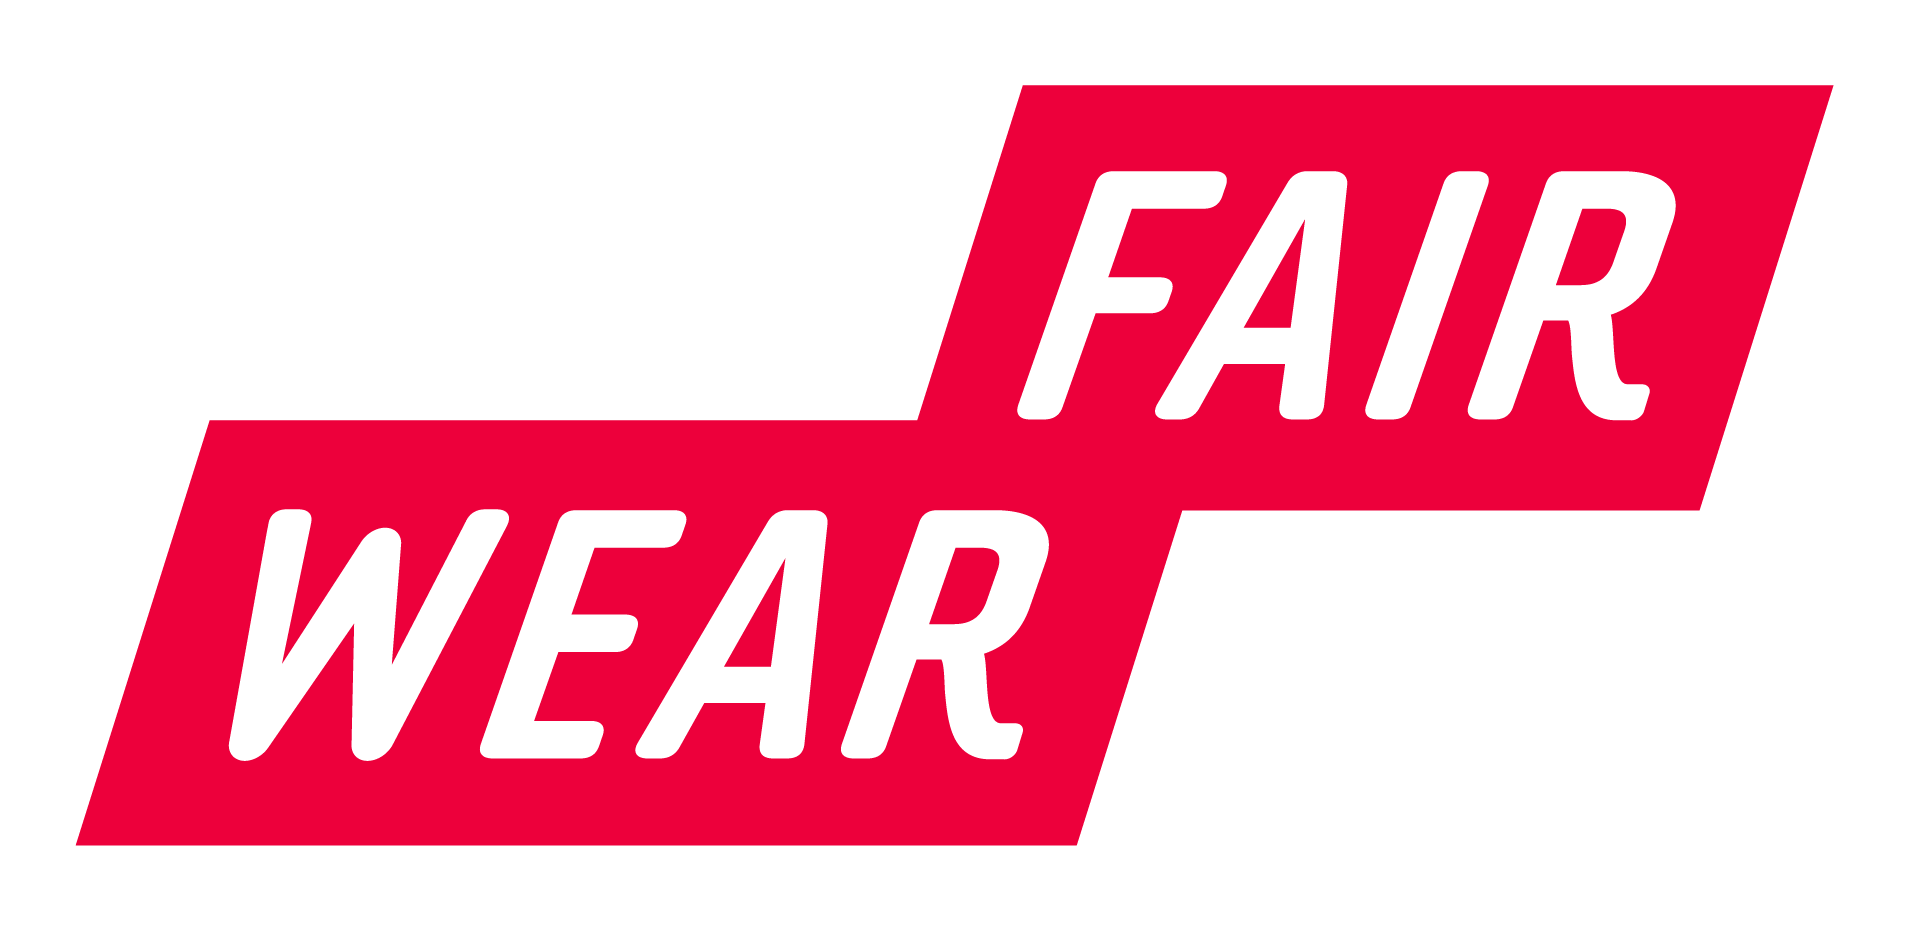 Die Fair Wear Foundation wird von 140 Marken getragen und setzt sich für eine Verbesserung der sozialen Bedingungen in den Textil-Produktionsländern ein.